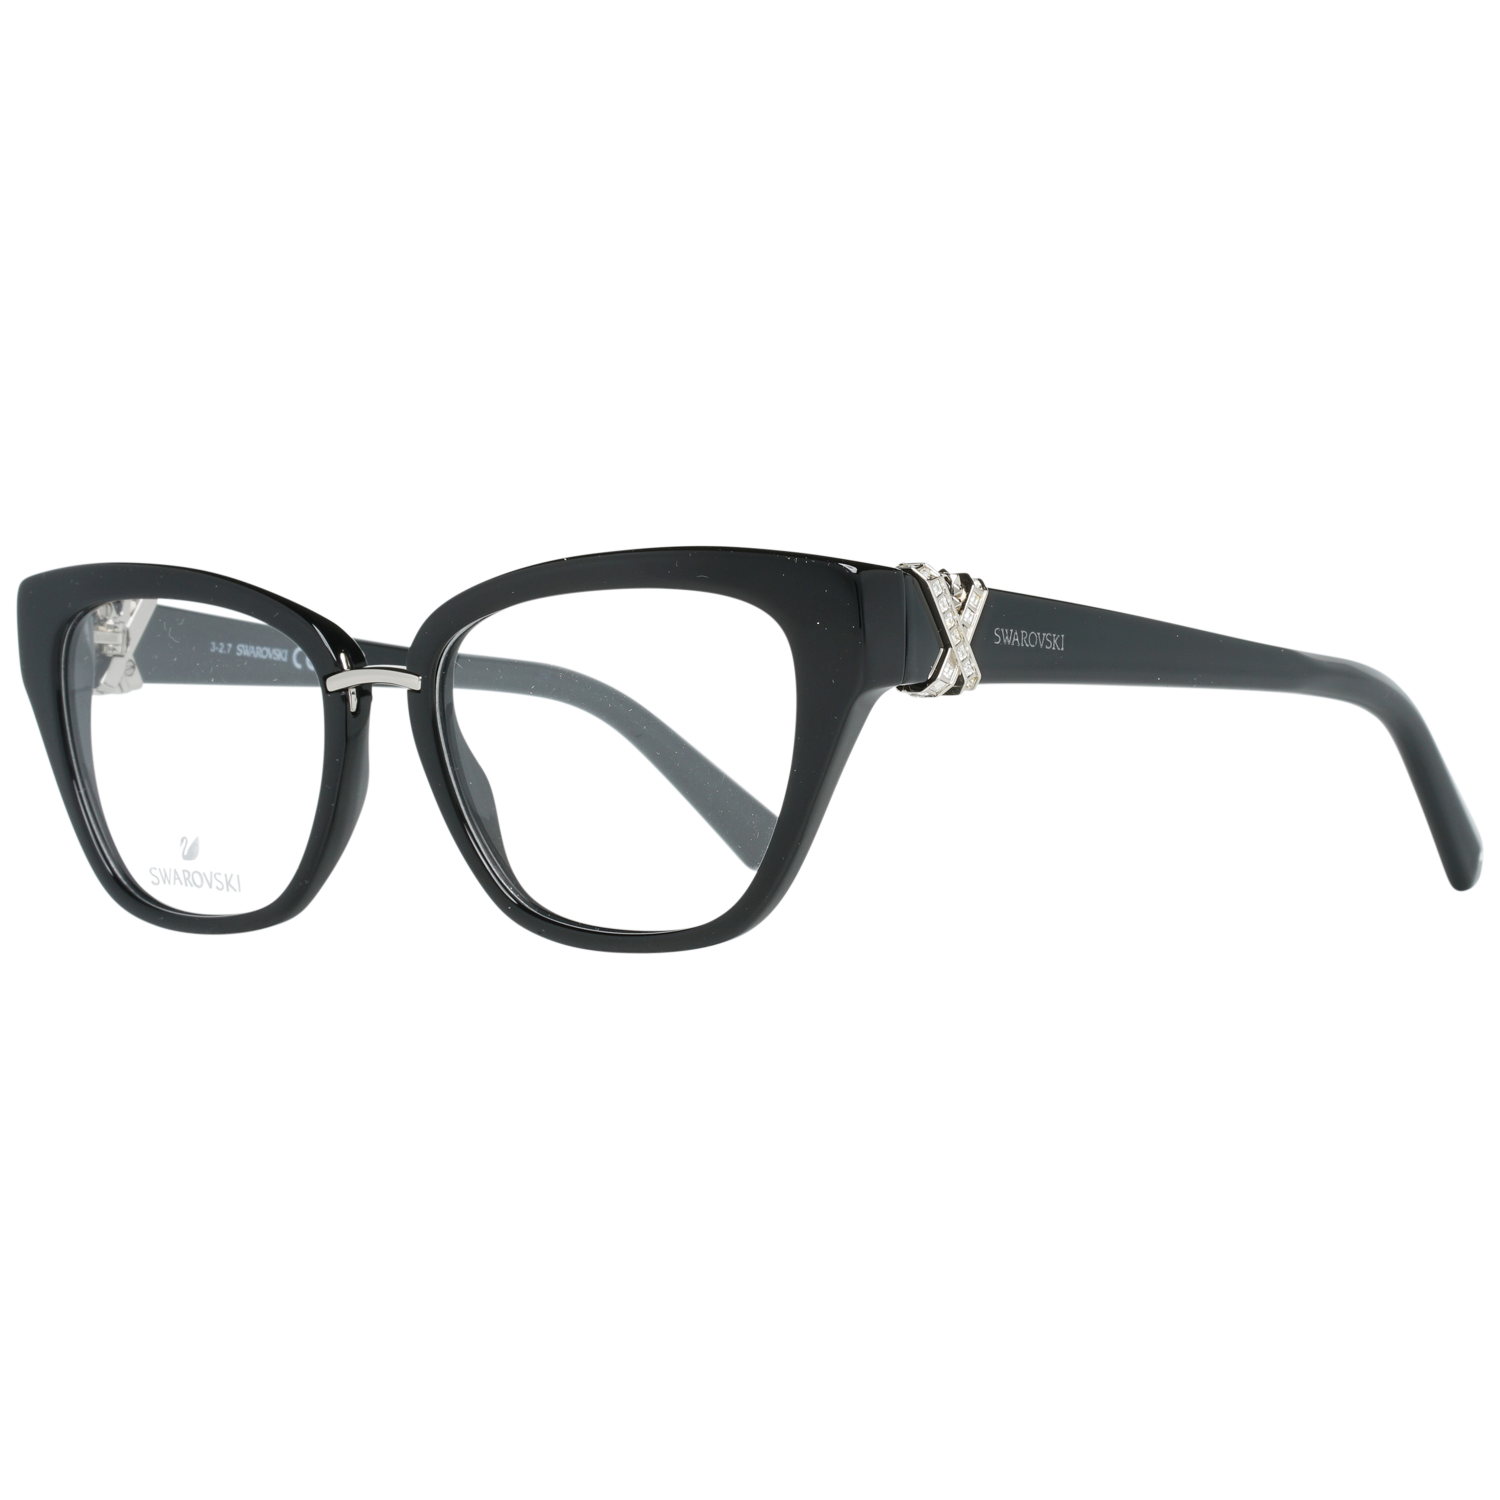 Swarovski Frames Swarovski Women Glasses Optical Frame SK5251 001 50 Eyeglasses Eyewear UK USA Australia 